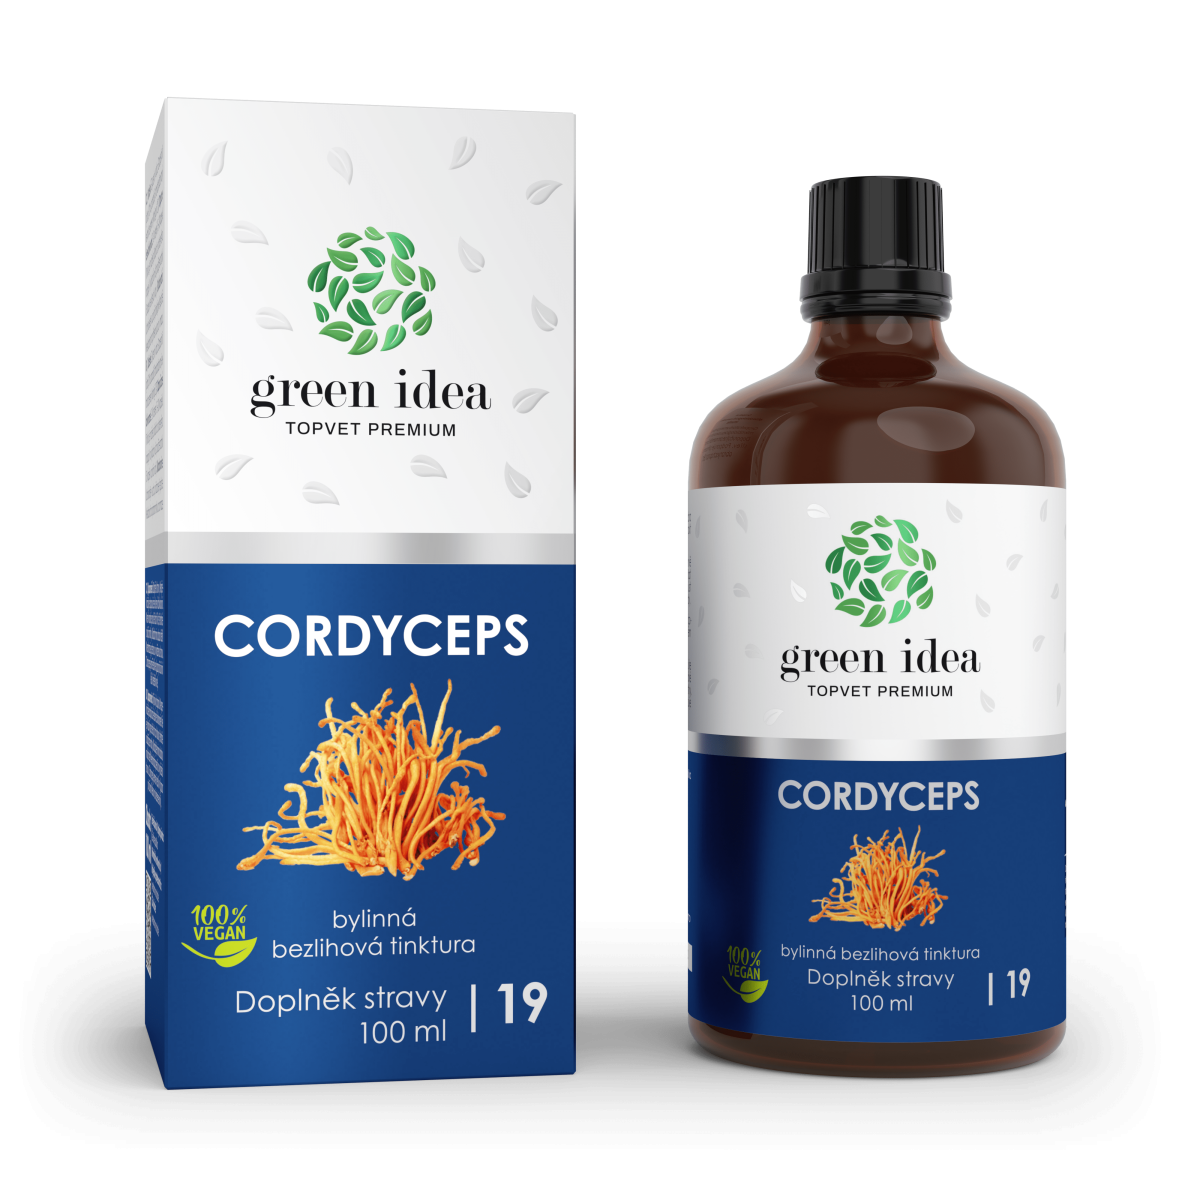 Cordyceps - bezlihová tinktura na vitalitu